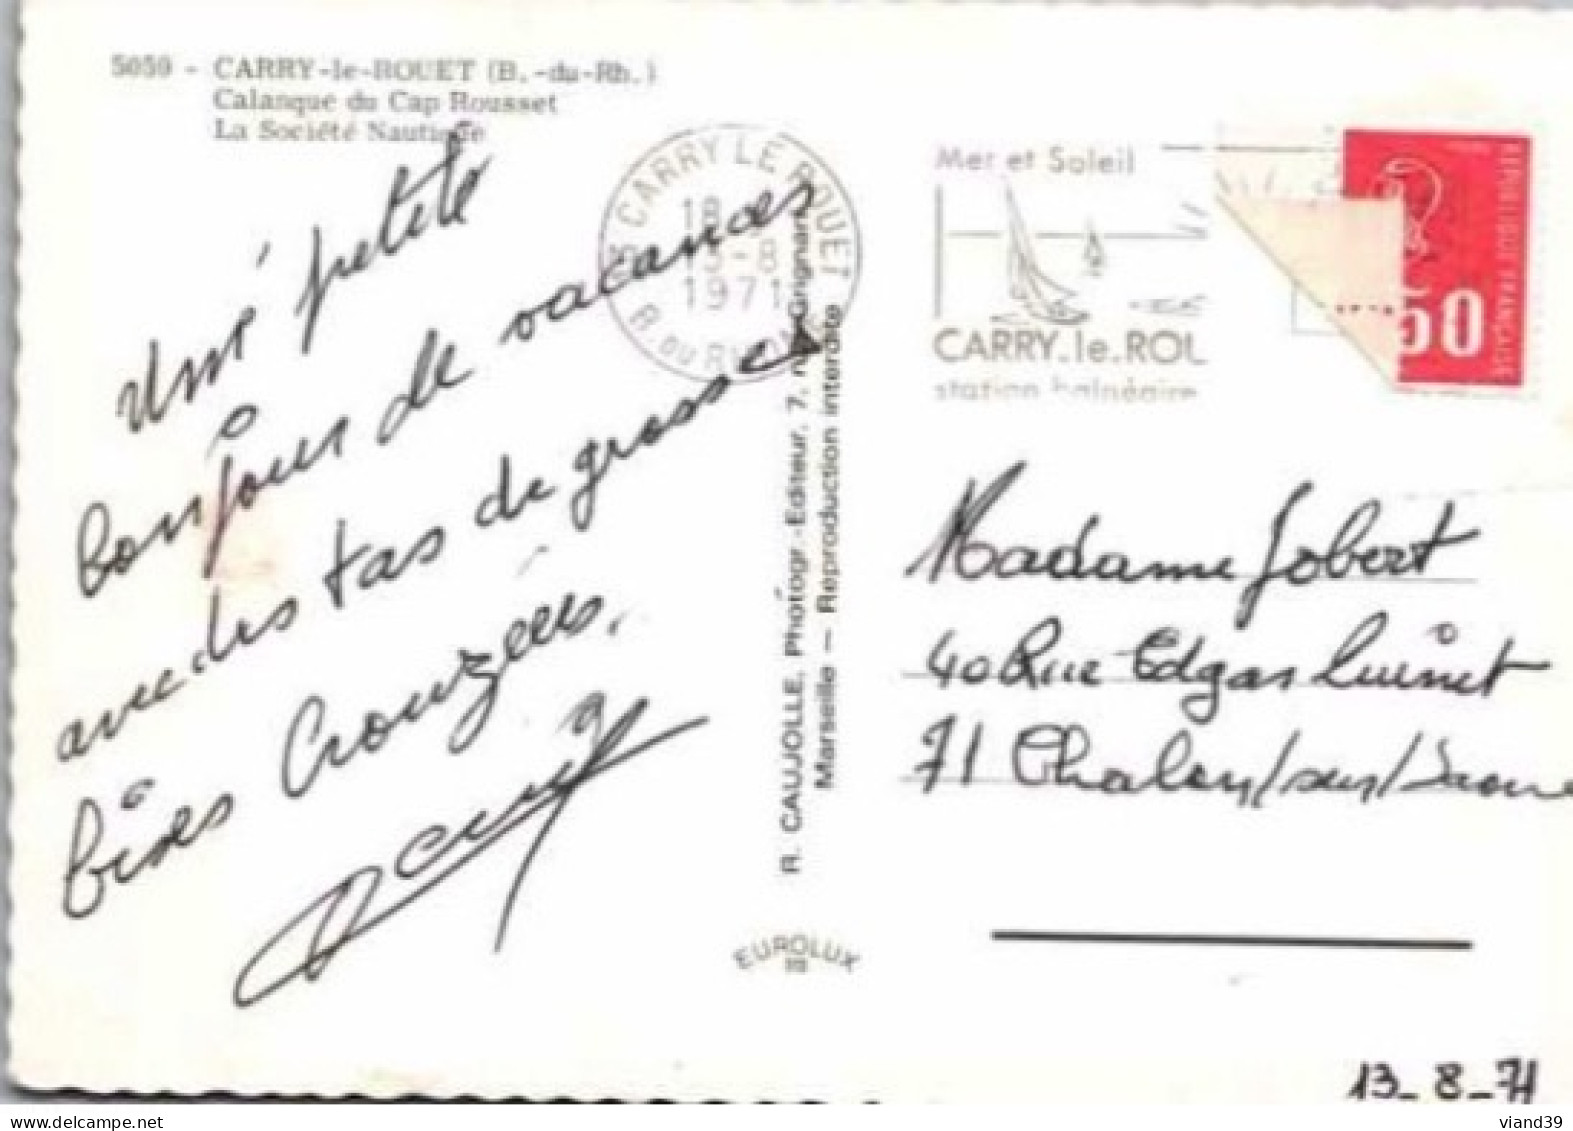 CARRY Le ROUET. -  Calanque Du Cap Rousset - La Société Nautique    Cachet Poste  Aout 1971 - Carry-le-Rouet